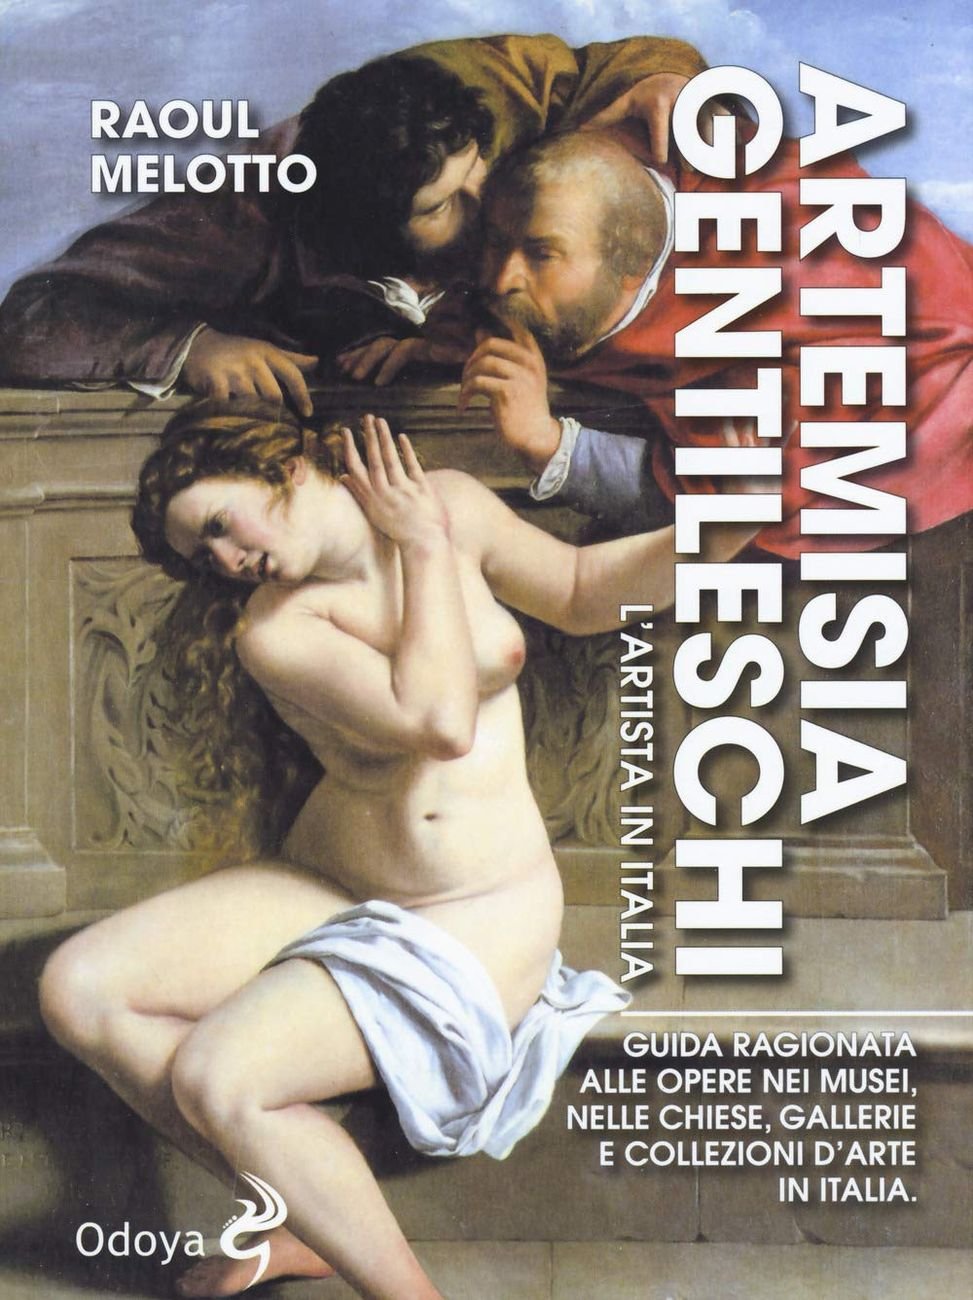 Raoul Melotto – Artemisia Gentileschi. L'artista in Italia (Odoya, Bologna 2019)